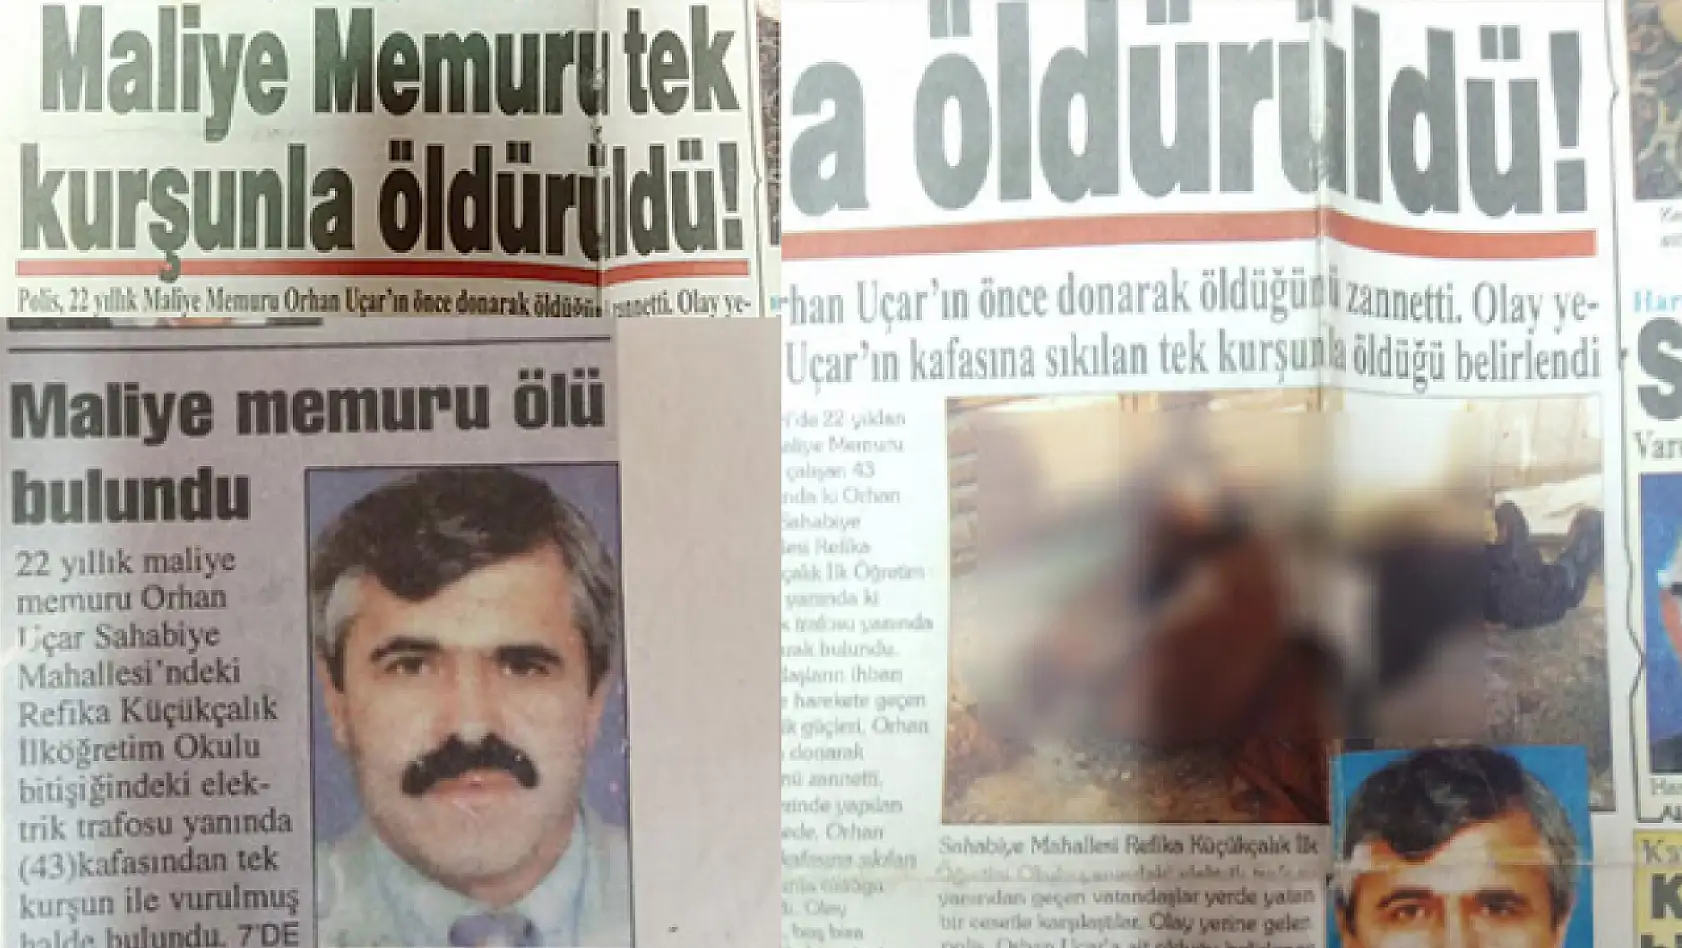 Kayseri'deki 'Maliyeci cinayetinde' yeni gelişme! Aile Cumhurbaşkanlığına başvurdu